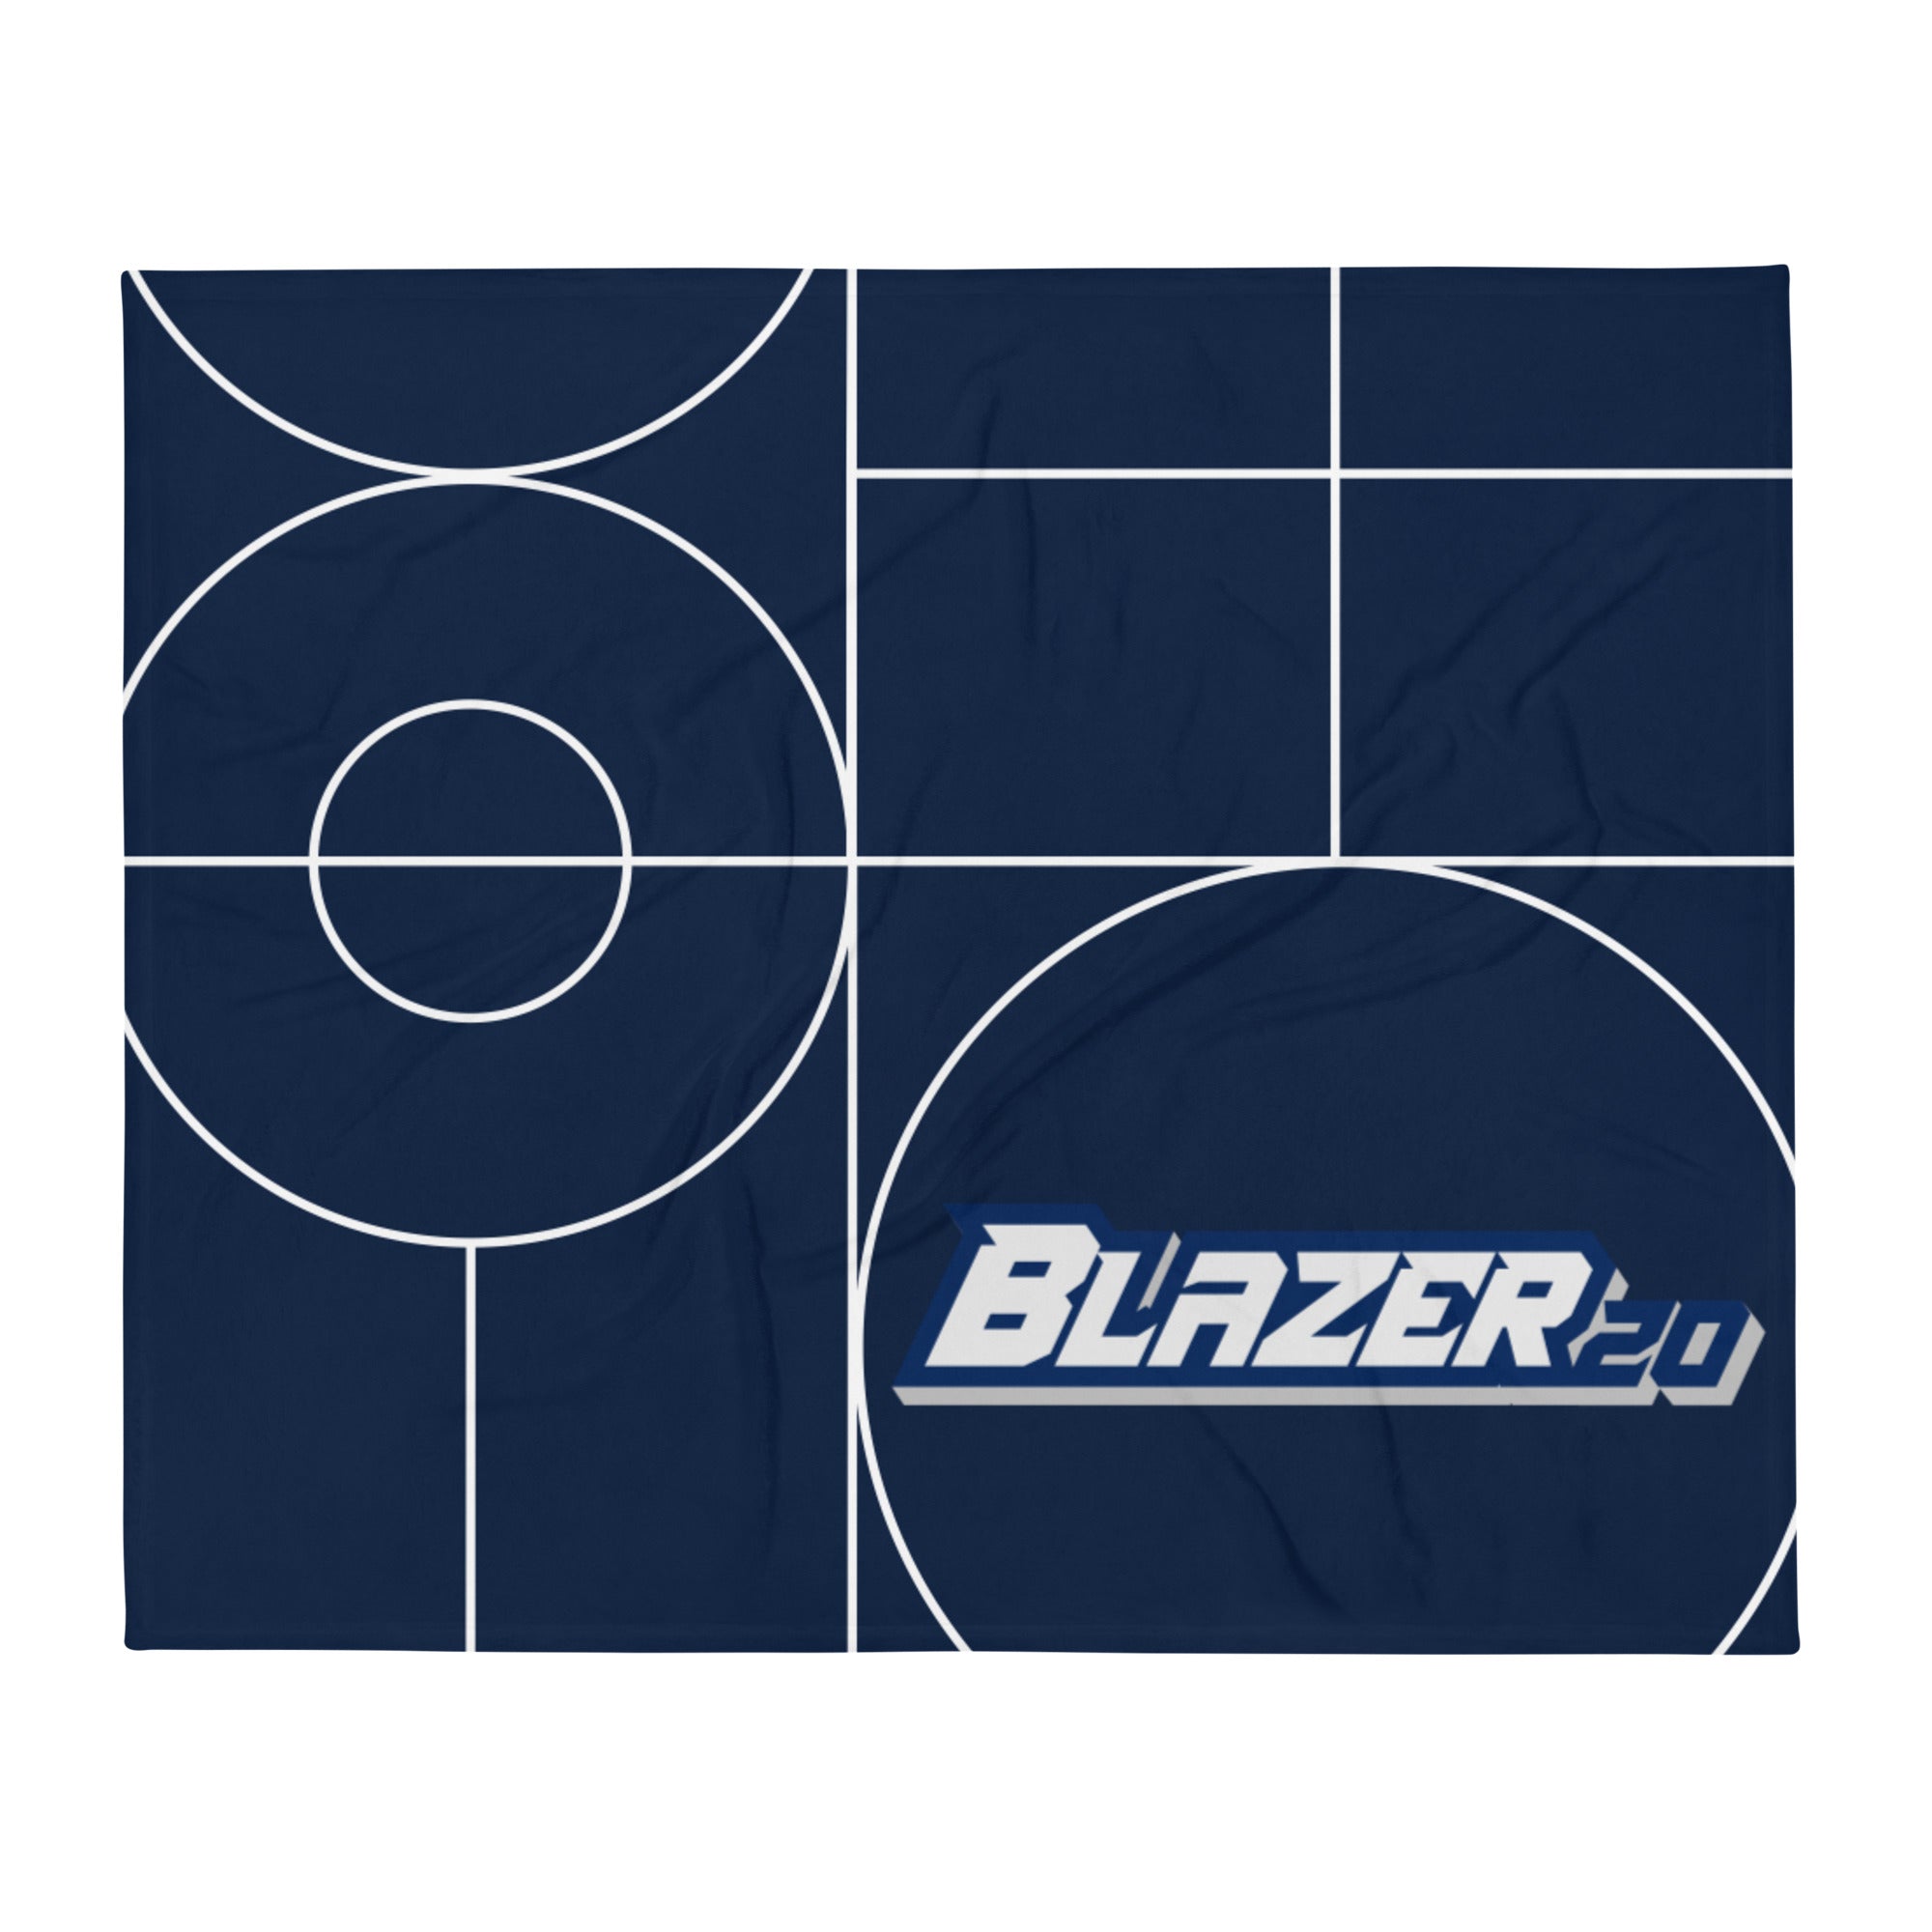 Blaise Sclafani Blazer20 Brand Throw Blanket